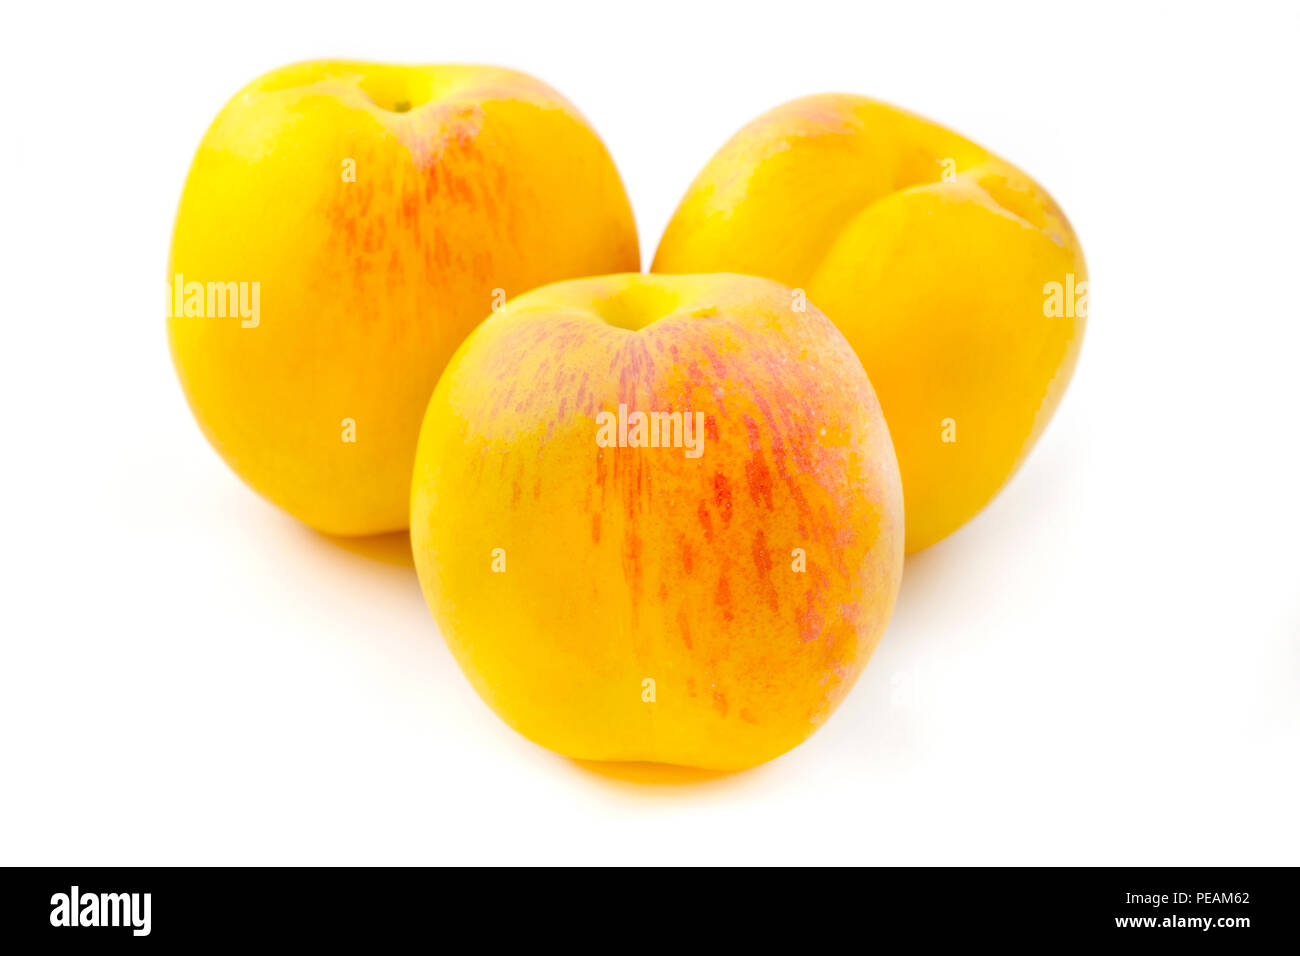 Yellow peaches on a white background Stock Photo